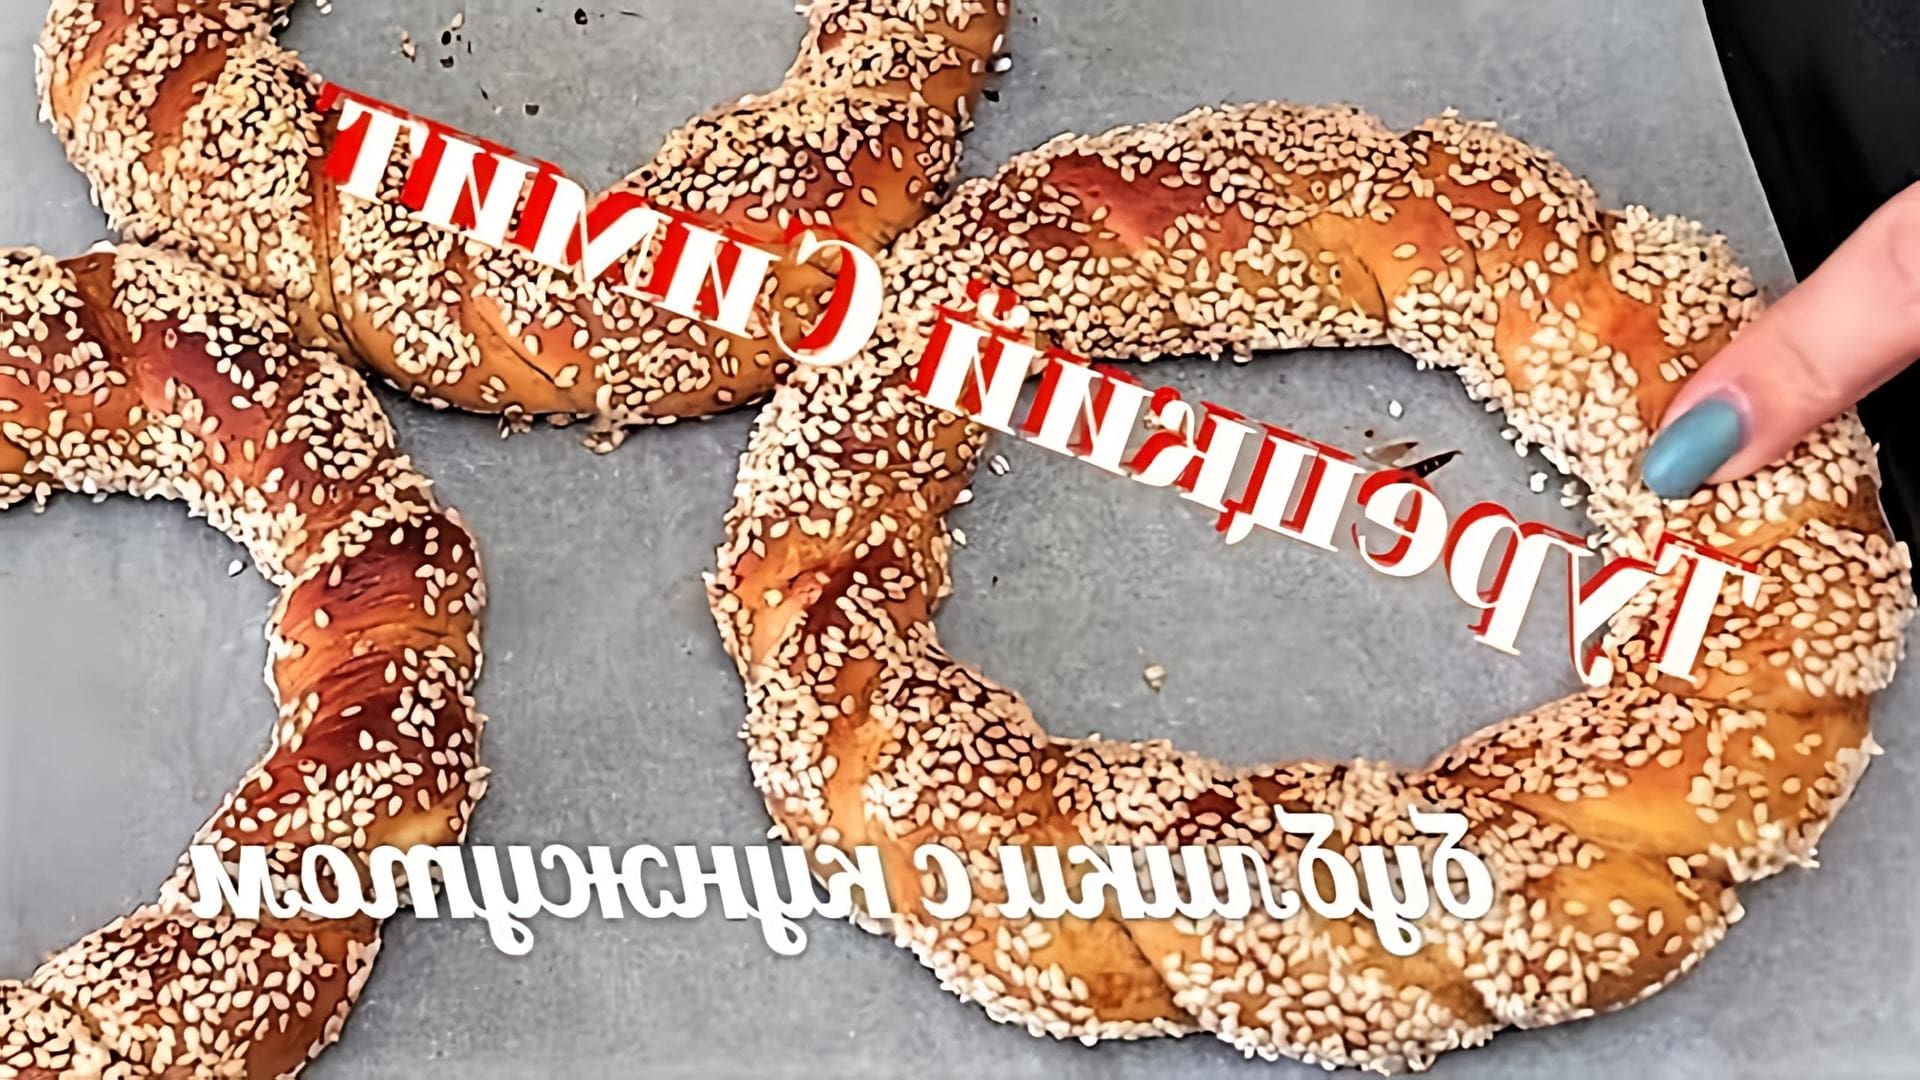 В этом видео демонстрируется рецепт приготовления турецкого симита, или бублика с кунжутом